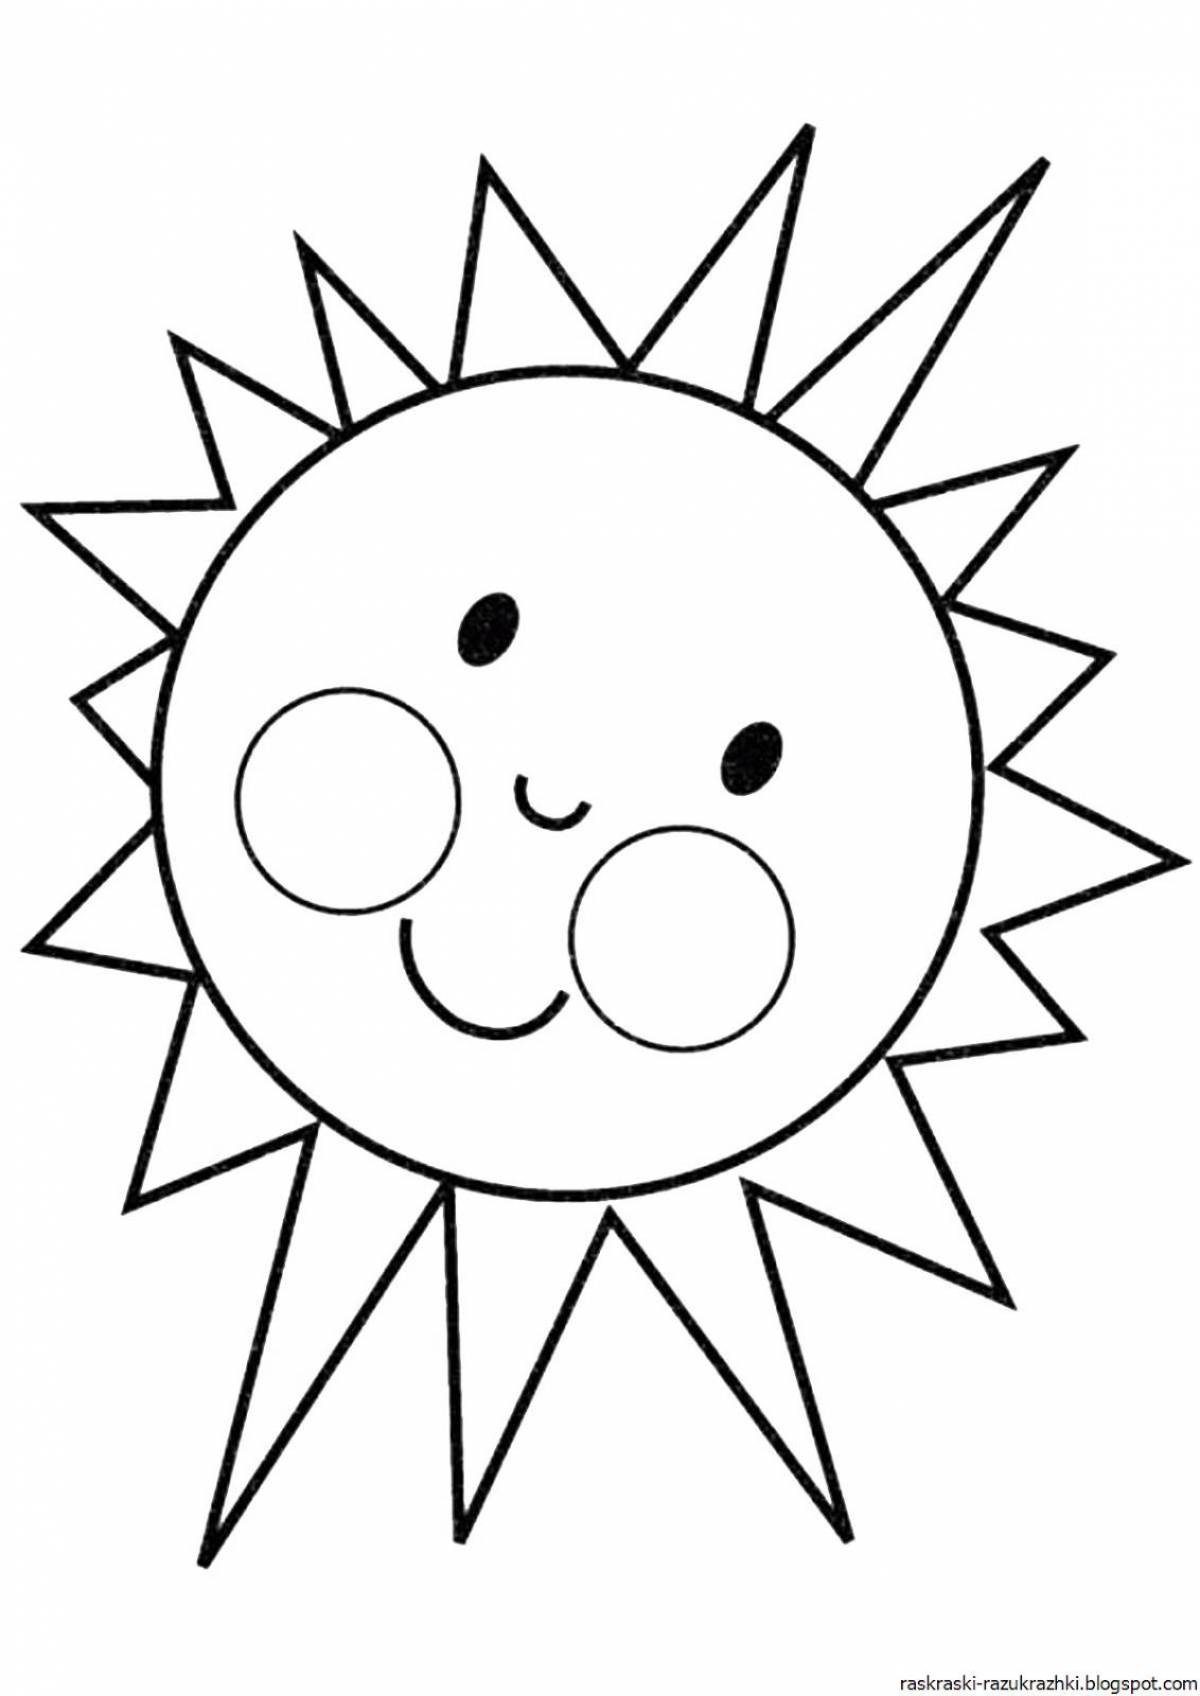 Fun coloring sun for kids